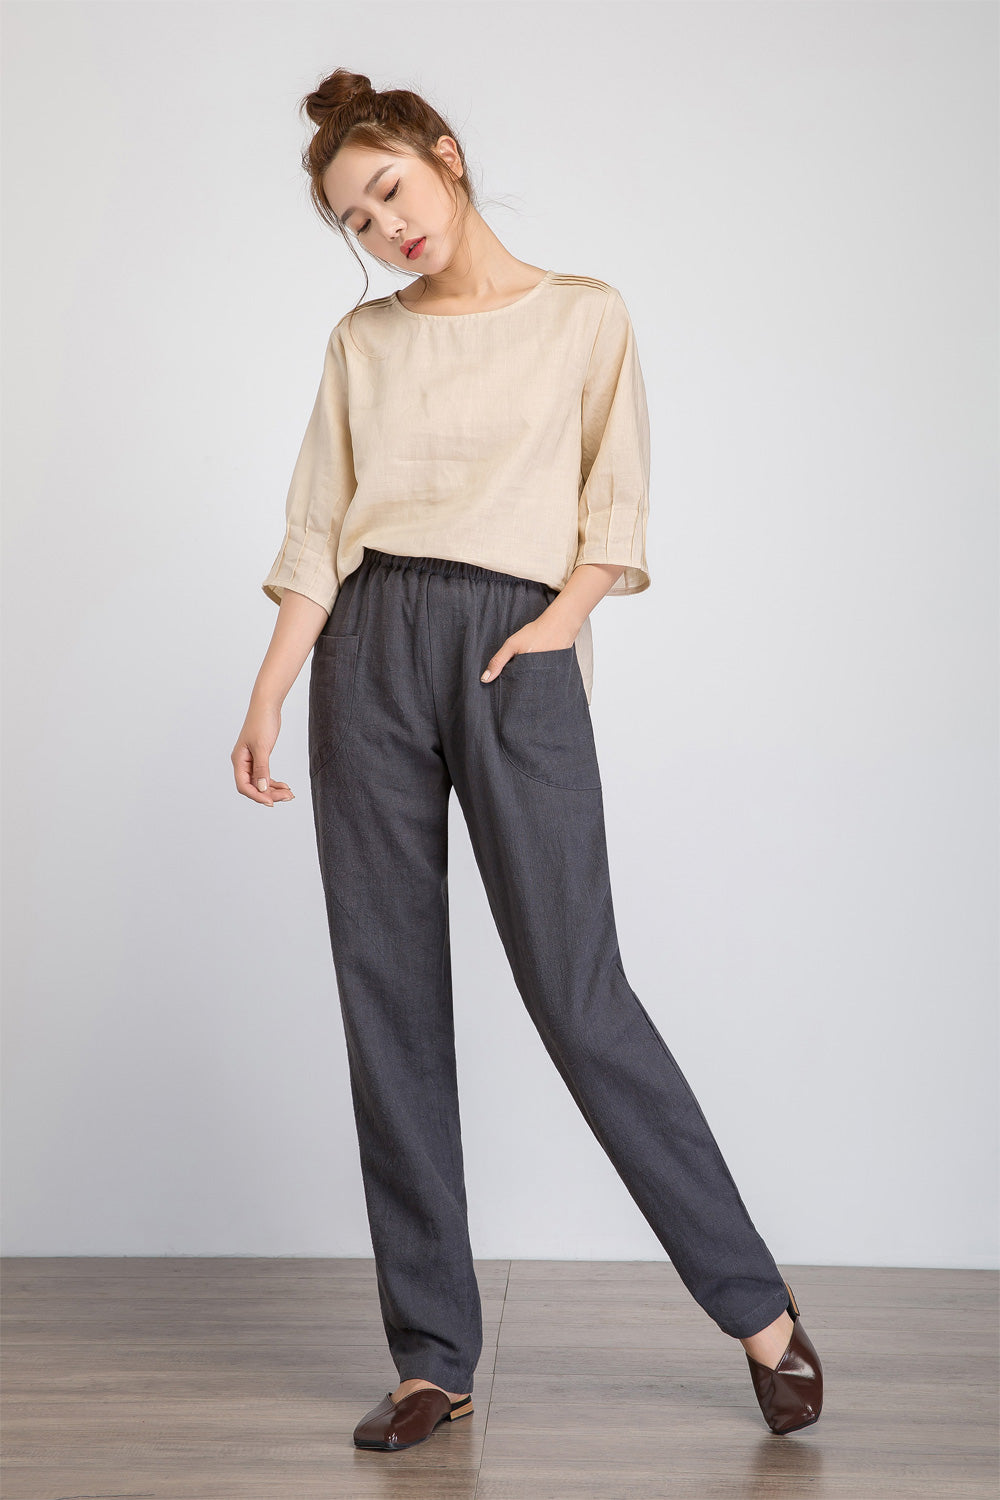 Cotton Linen Grey Plain Flat Front Casual Trouser